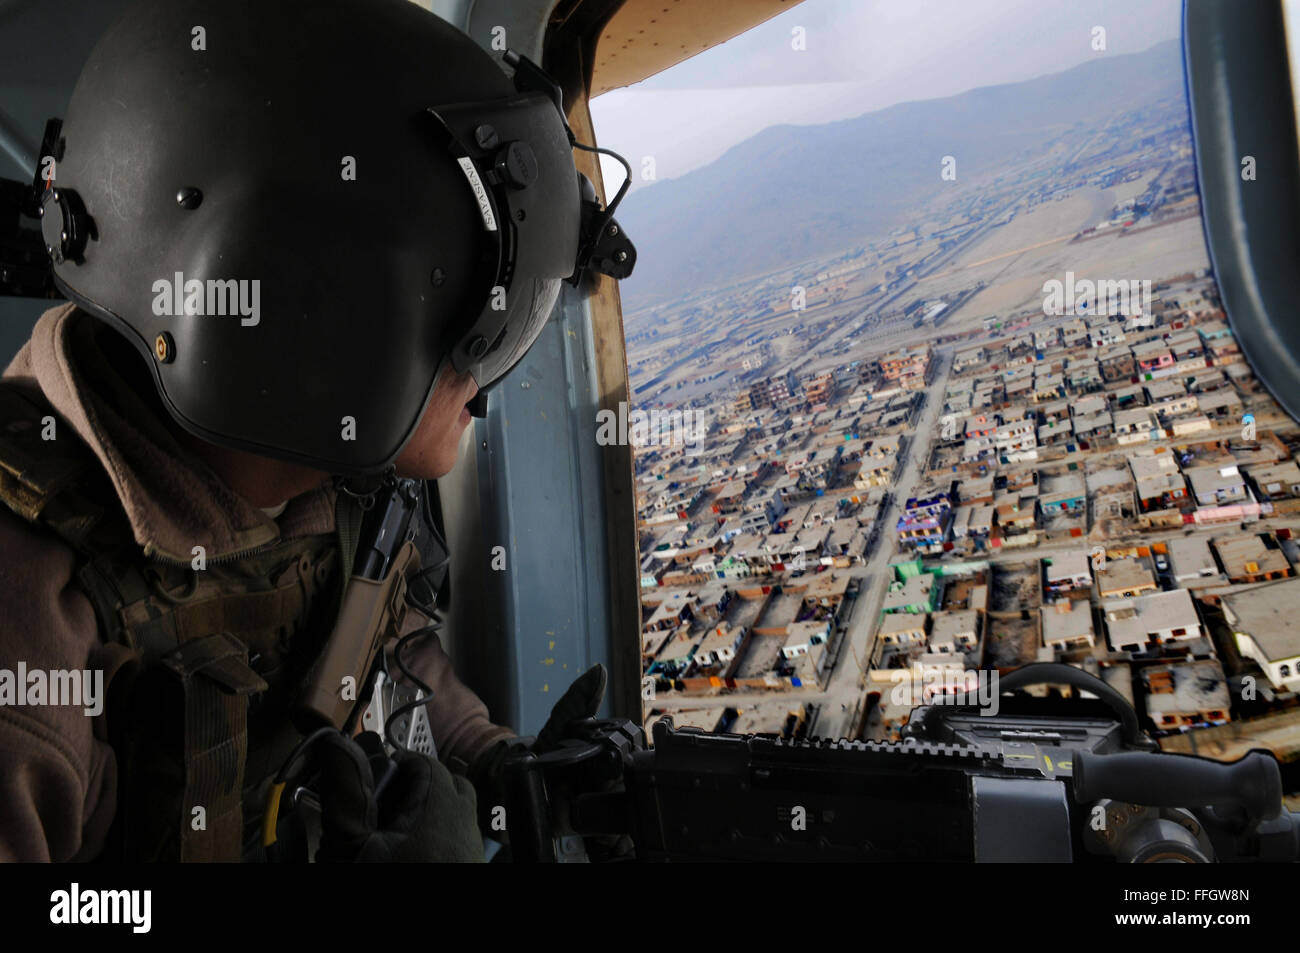 Techn. Sgt Jerry Sayasene, Flugingenieur mit der 438th Air Expeditionary Advisory Squadron, bietet Support für Gunner während eines Fluges zwischen Kabul und Jalalabad, Afghanistan. Sayasene ist derzeit eingesetzt, um die afghanischen Luftwaffe Flugingenieure am internationalen Flughafen von Kabul beratenden auszubilden. Stockfoto